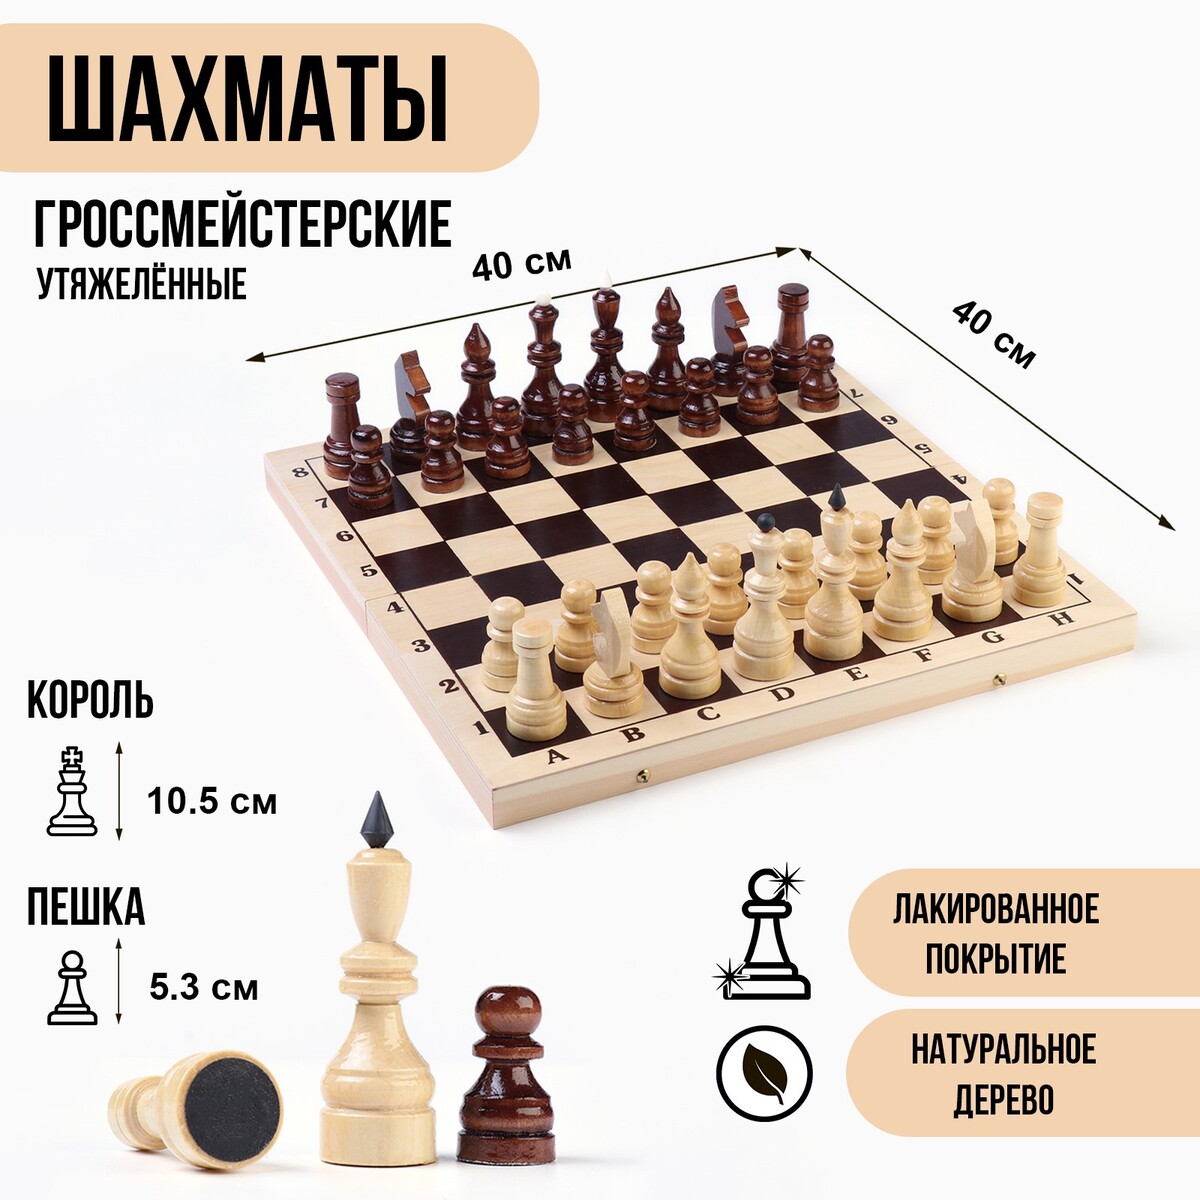 Шахматы гроссмейстерские, турнирные, утяжеленные, 40х40 см, король h=10.5 см, пешка 5.3 см